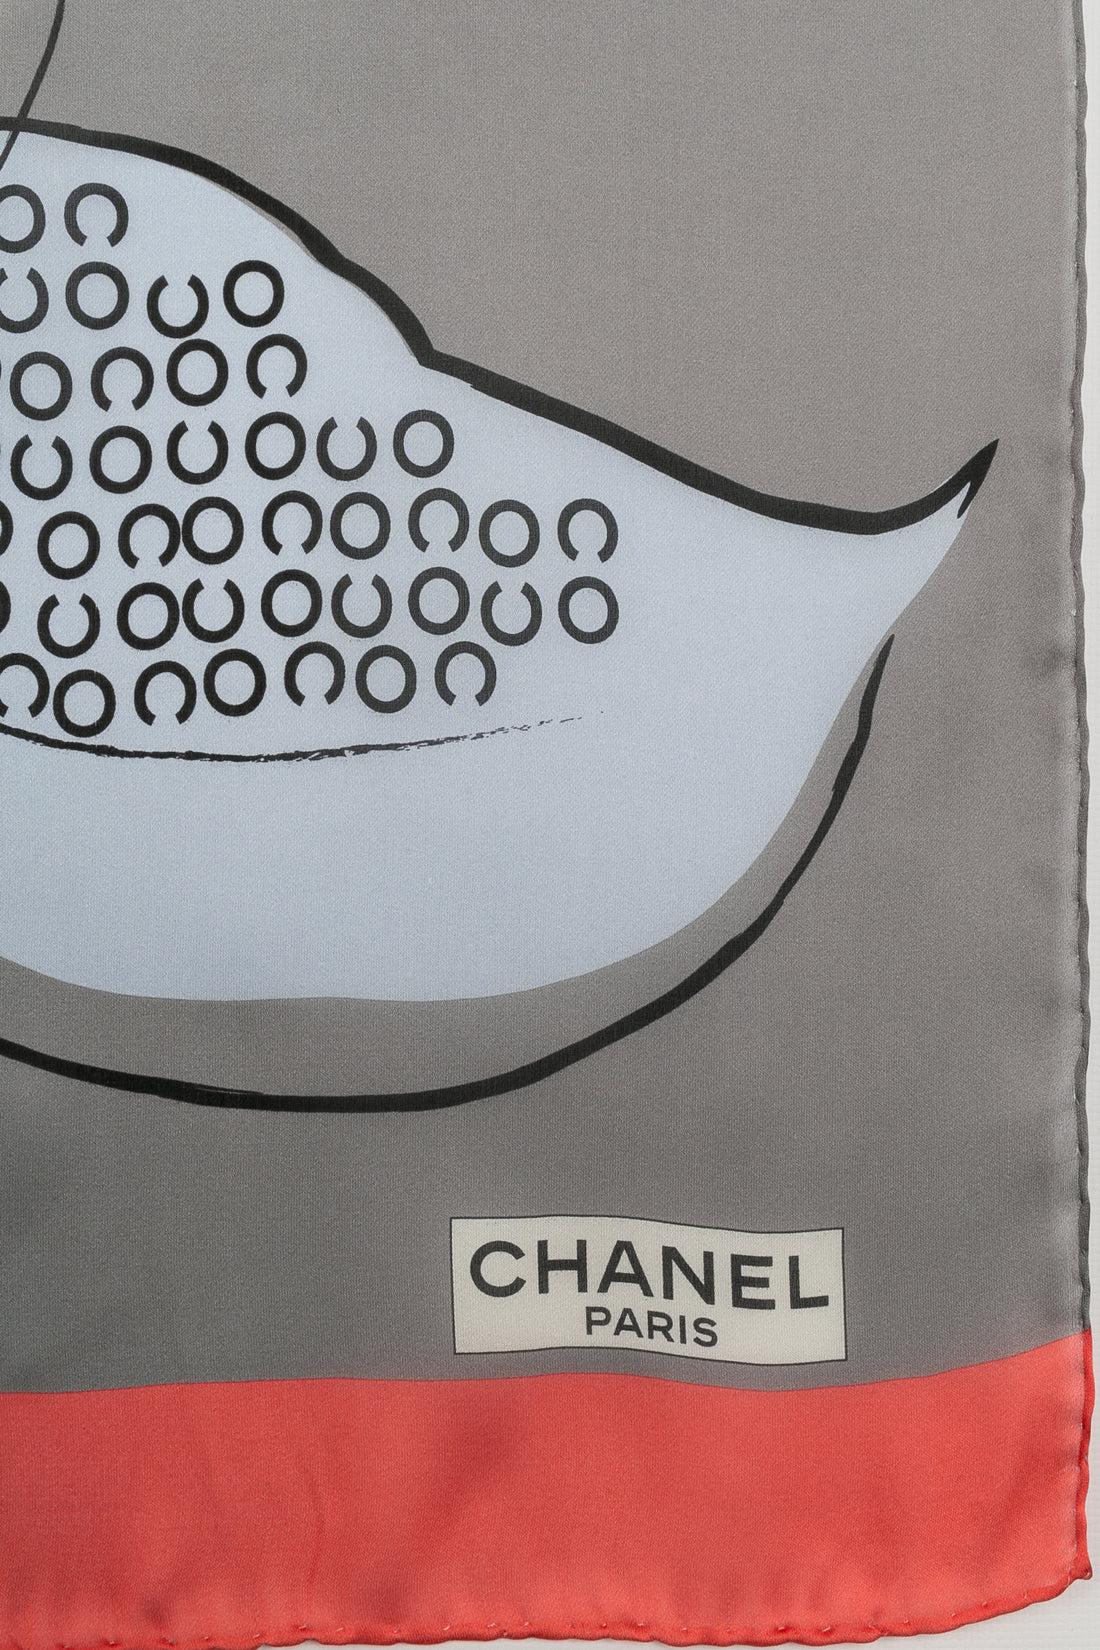 Chanel Silk Chiffon Scarf 1